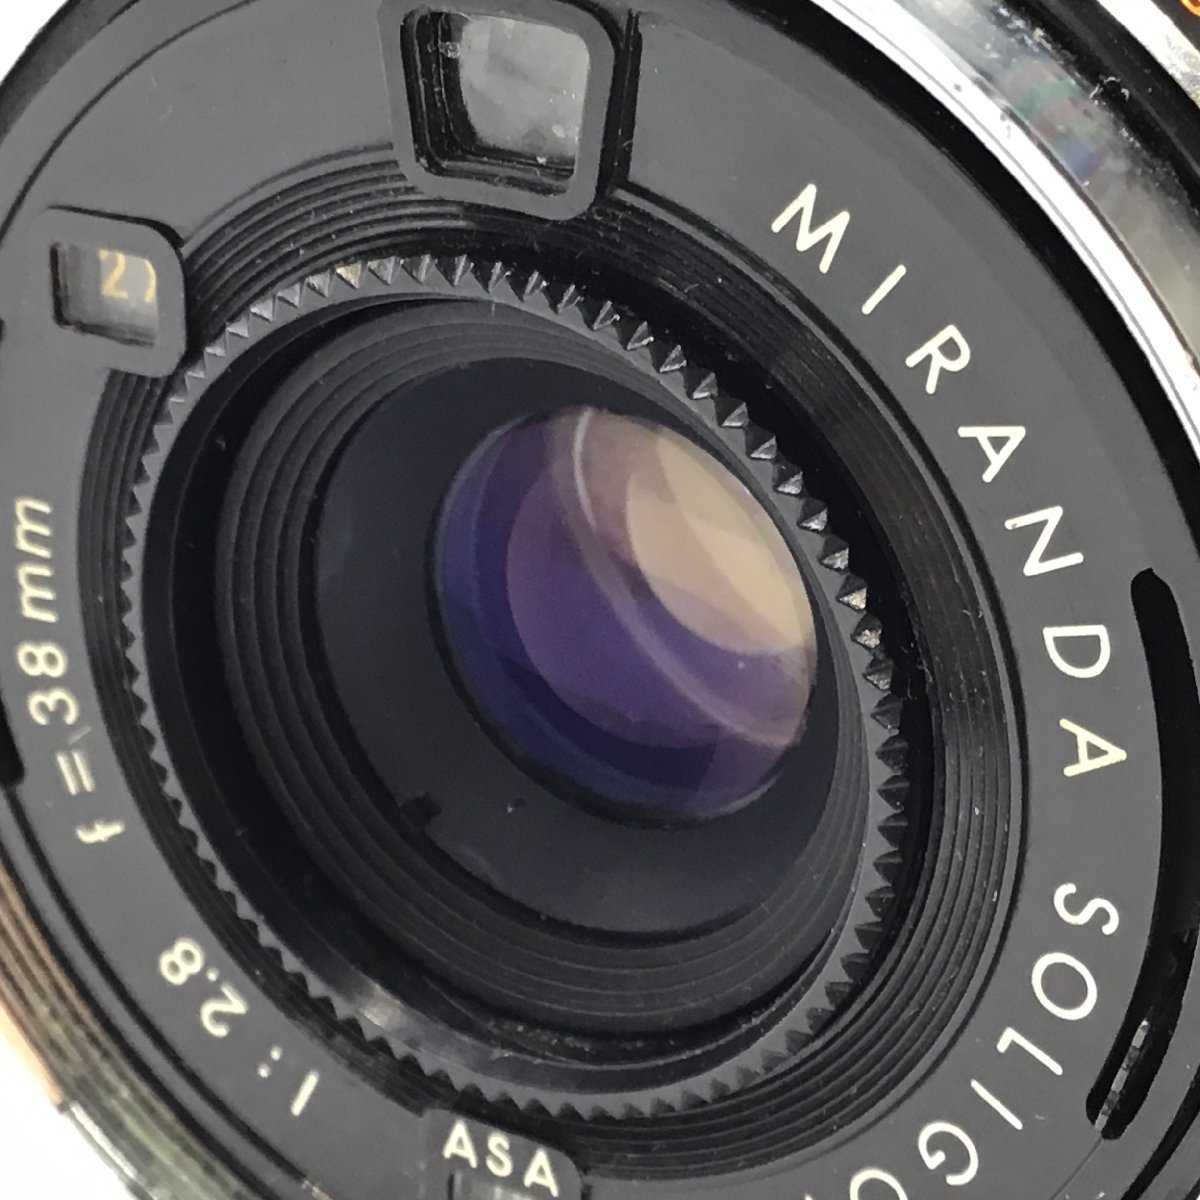 カメラ MIRANDA SENSORET SOLIGOR 1:2.8 f-38mm レンジファインダー 本体 ジャンク品 [6728KC]_画像2